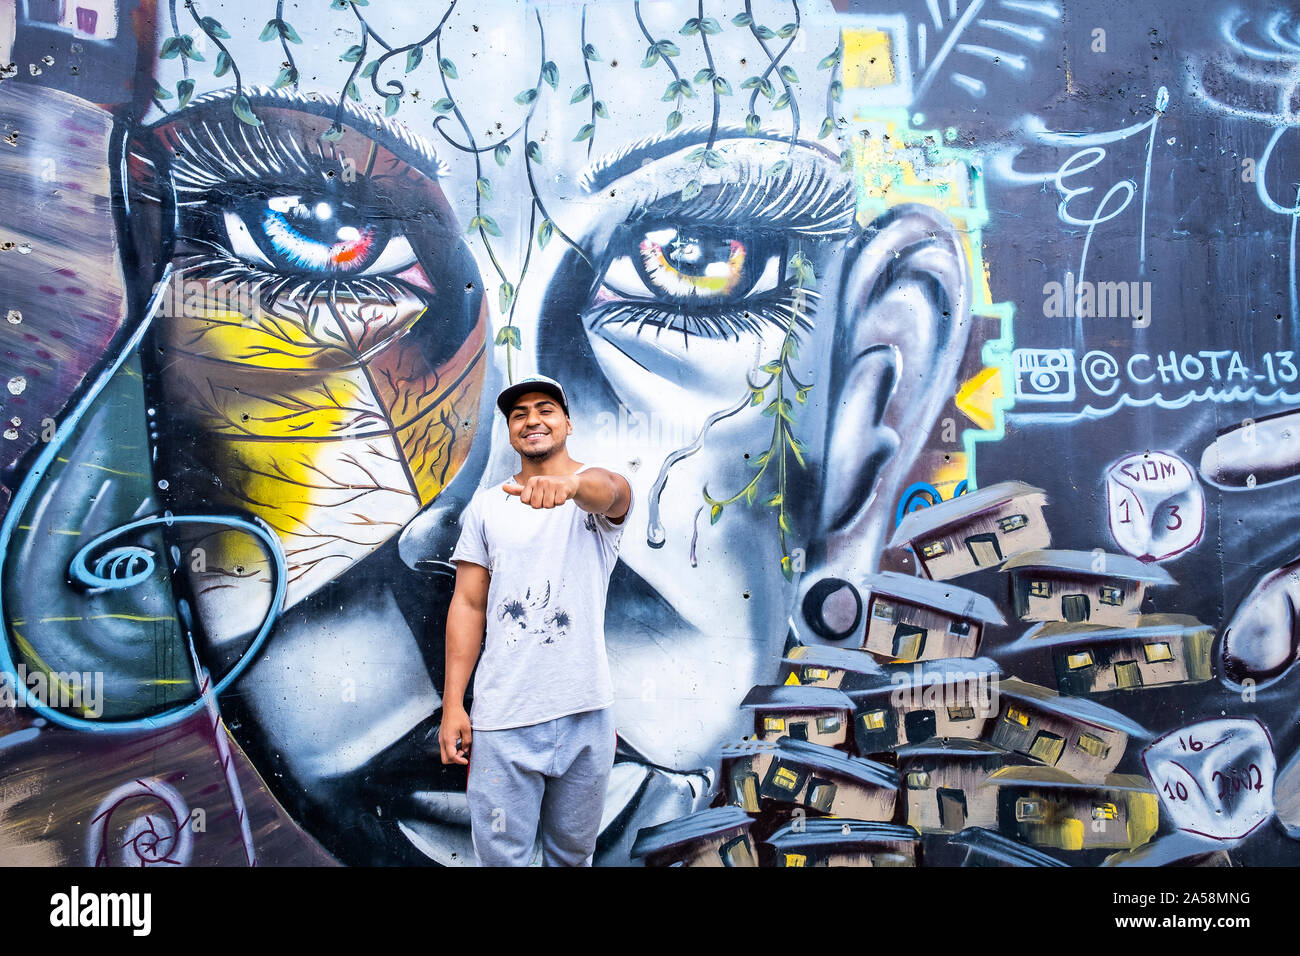 Chota et sa murale "Orion", art de rue, graffiti, Comuna 13, Medellín, Colombie Banque D'Images